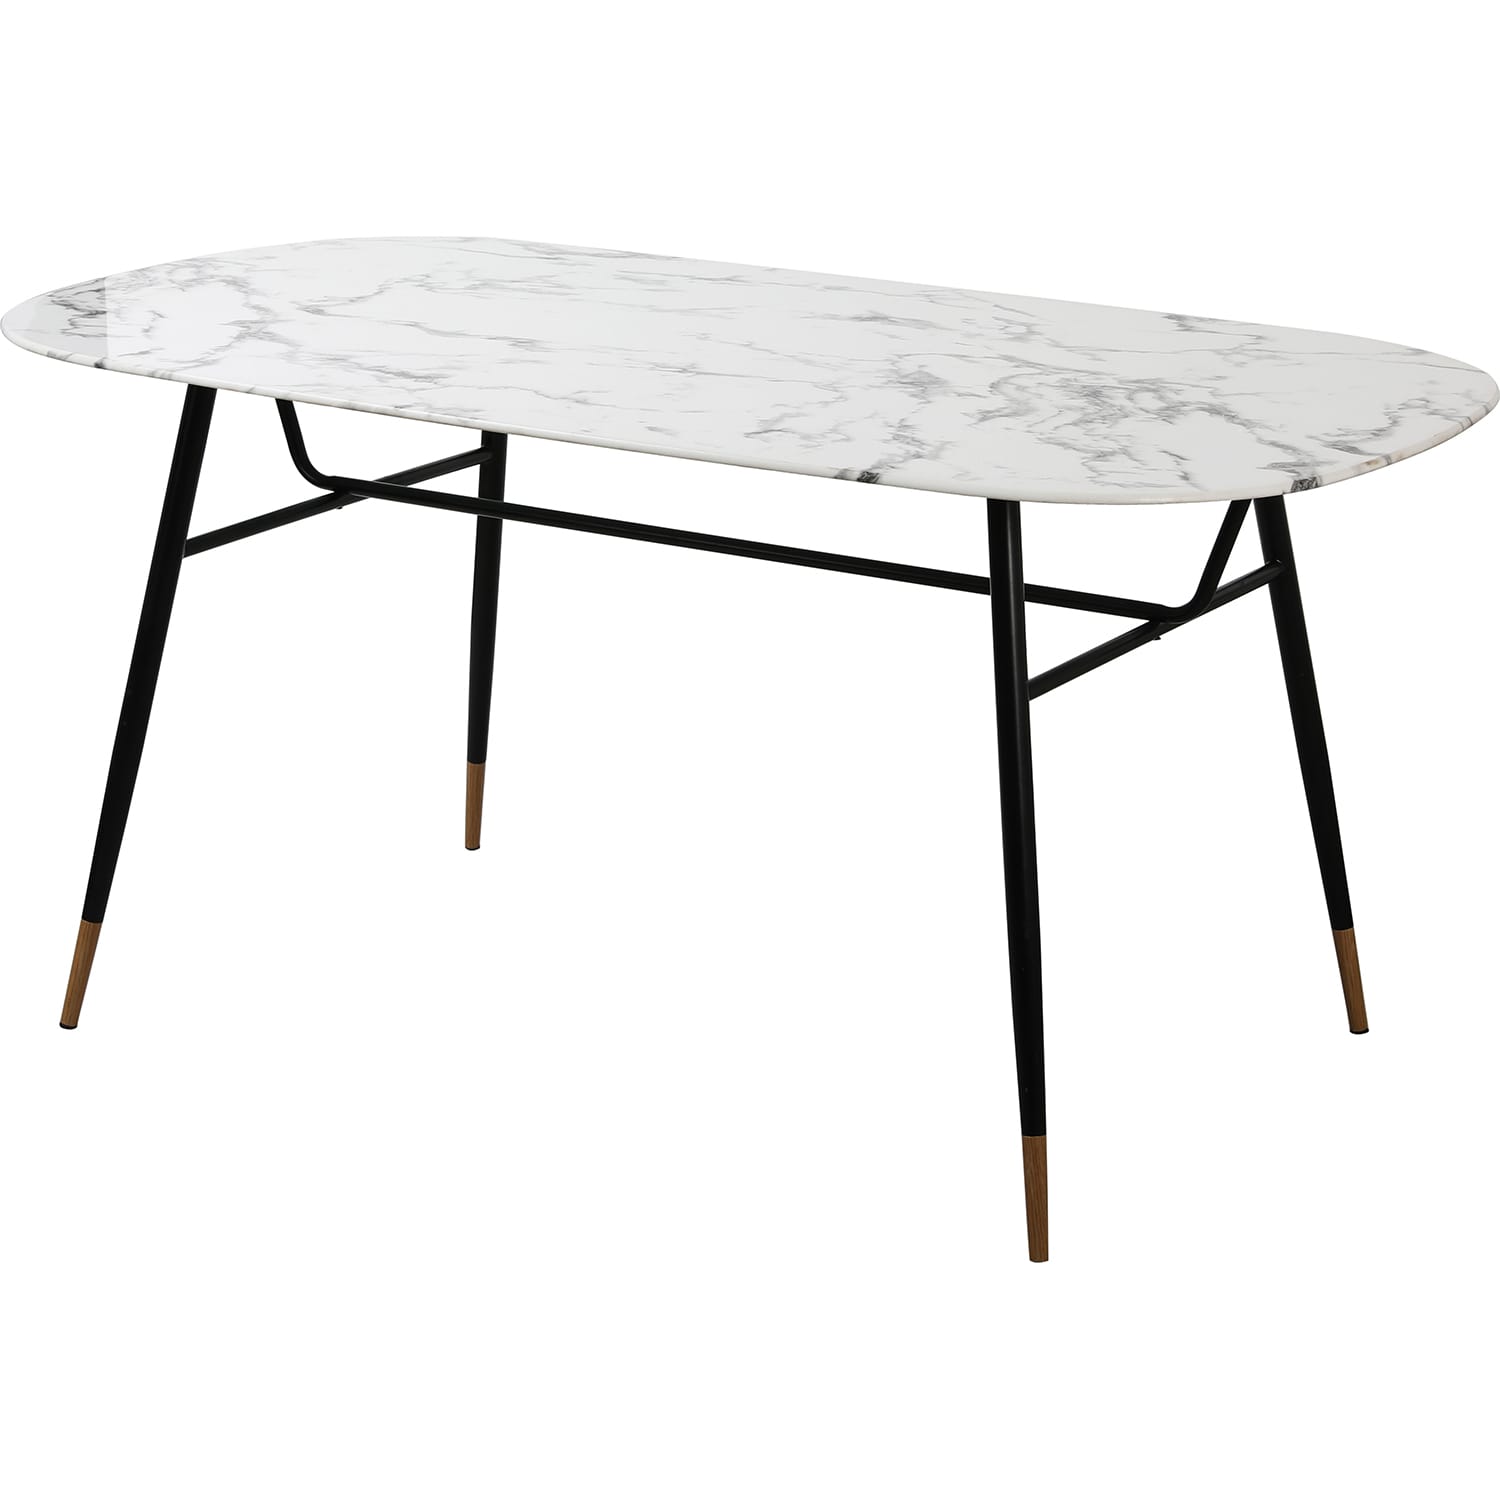 Tische Esstische | Metall Glastische mutoni Möbel | Glas 160 Tisch | | möbel weiss |